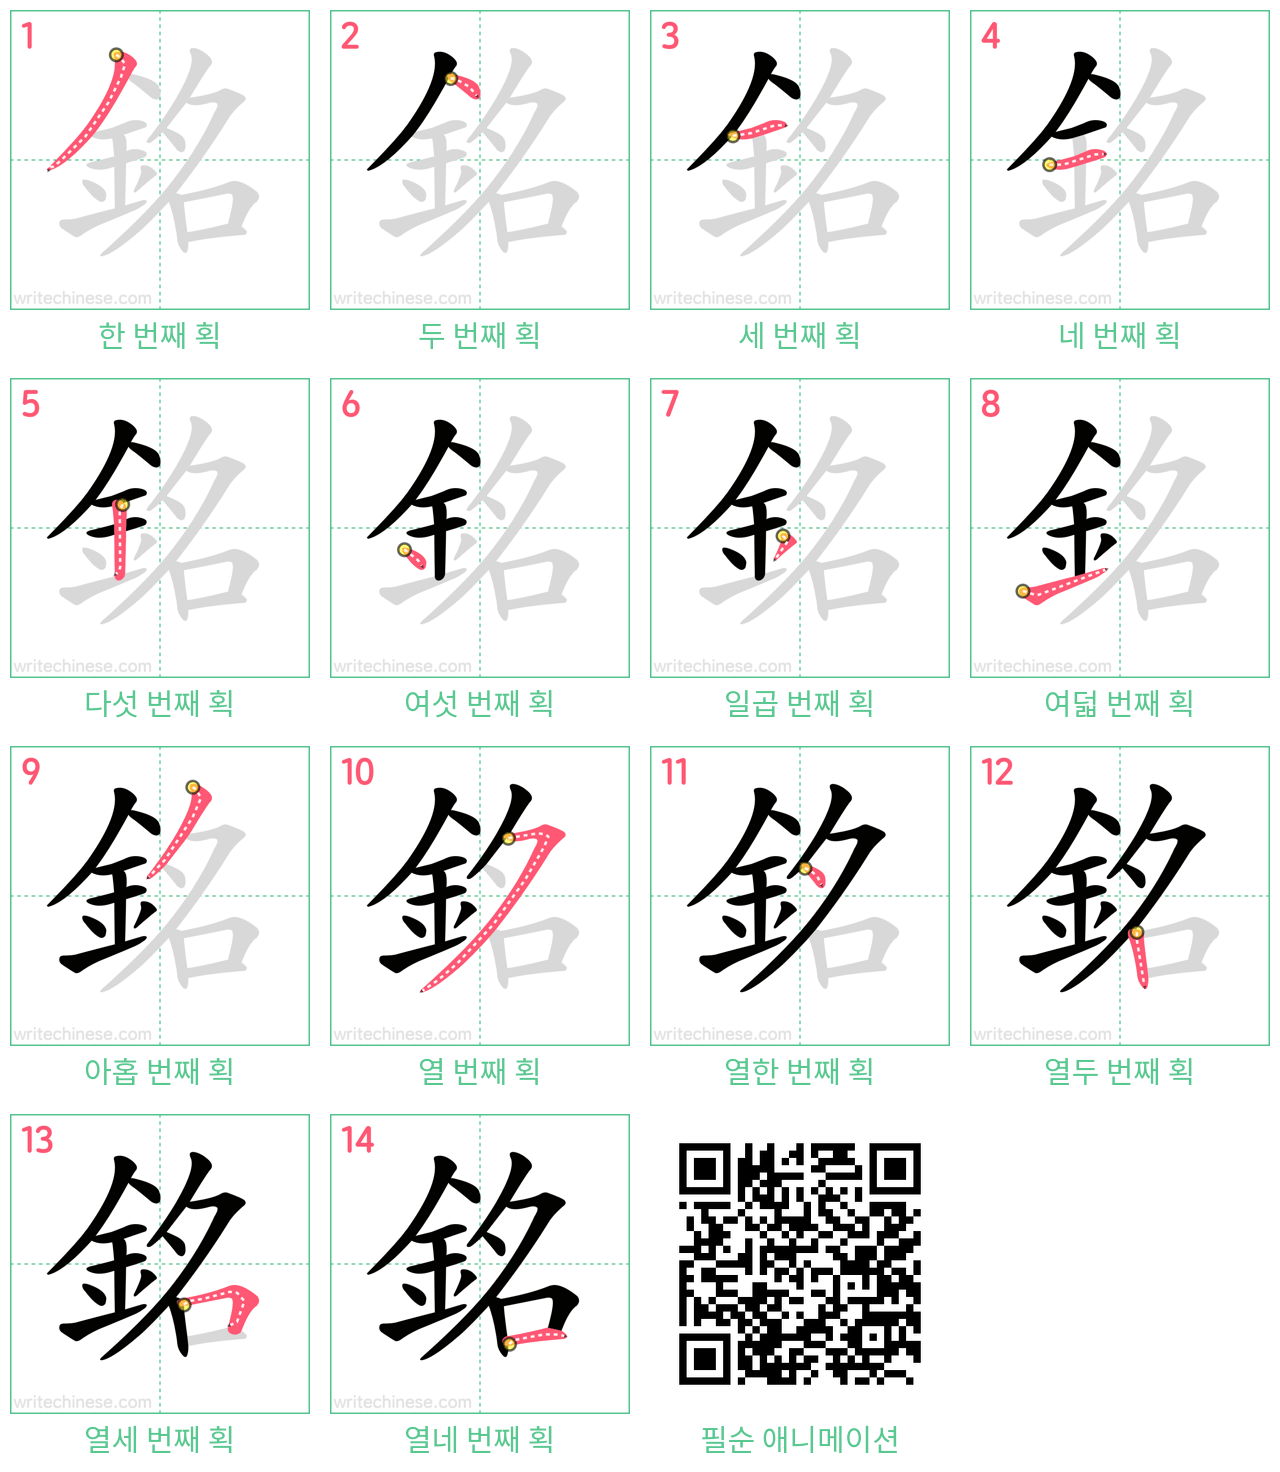 銘 step-by-step stroke order diagrams